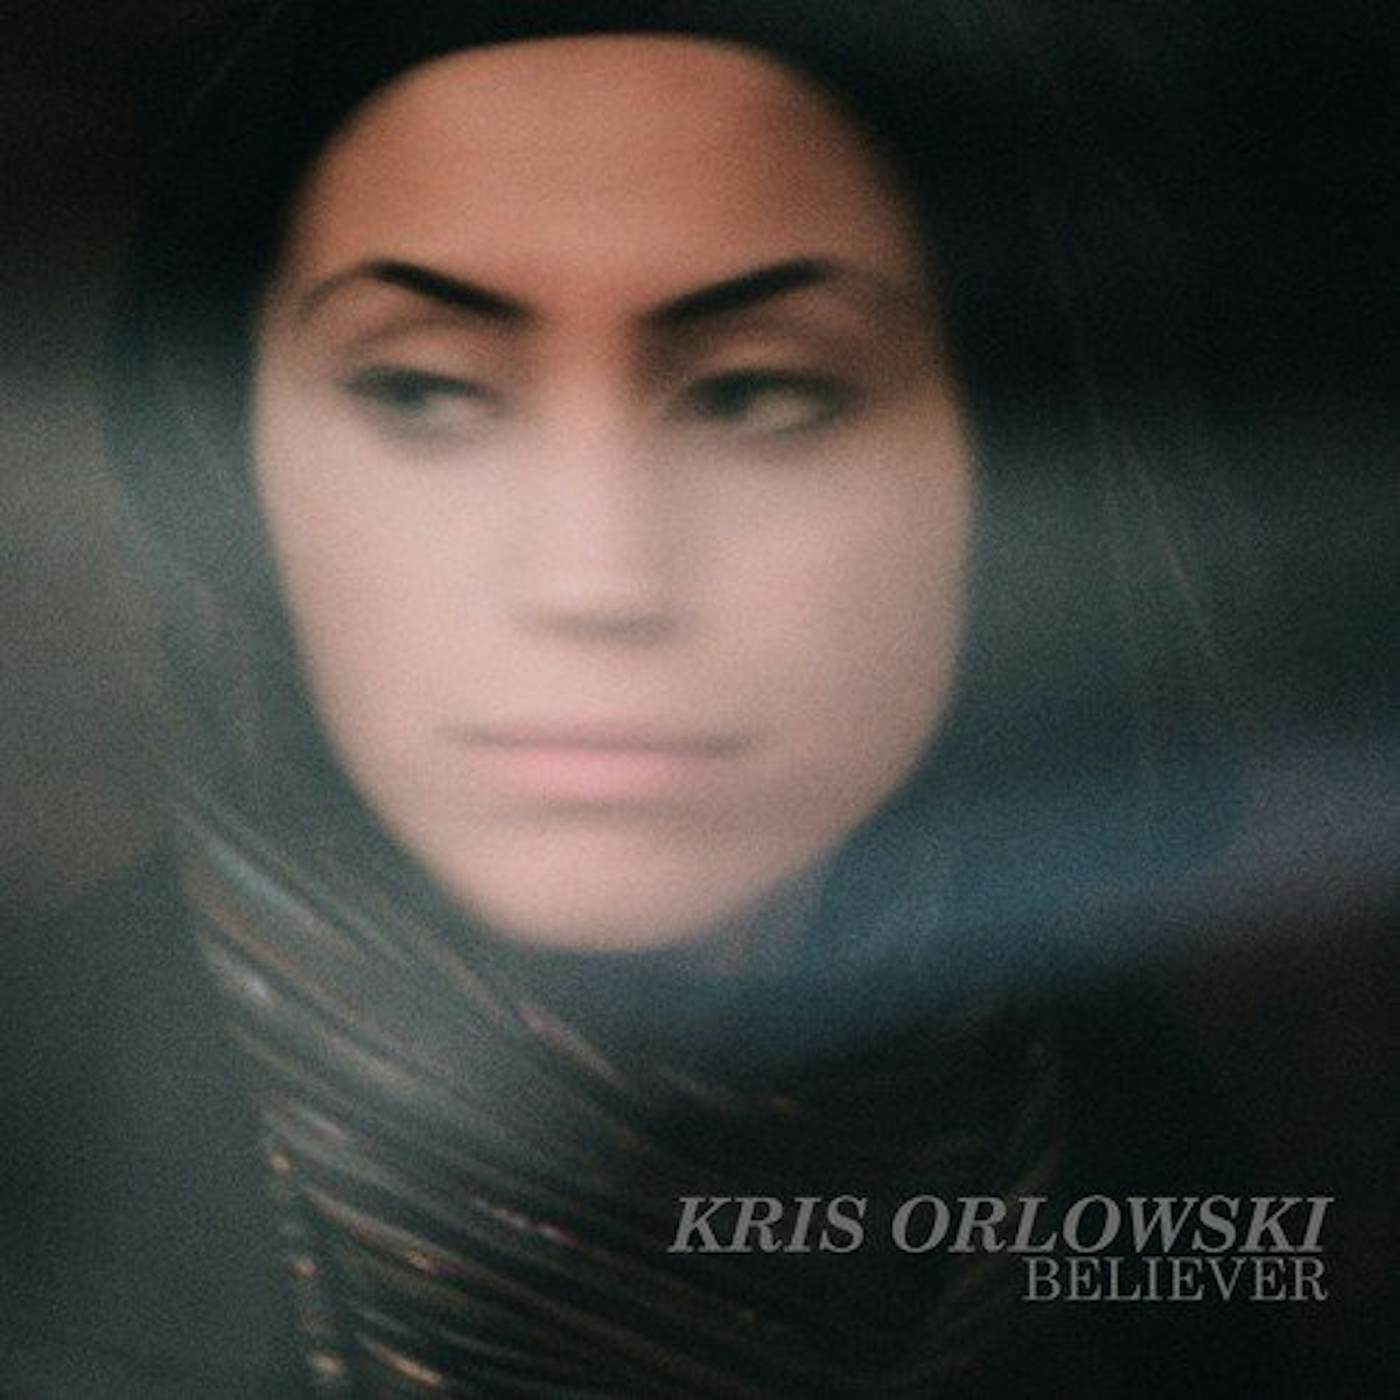 Kris Orlowski BELIEVER Vinyl Record